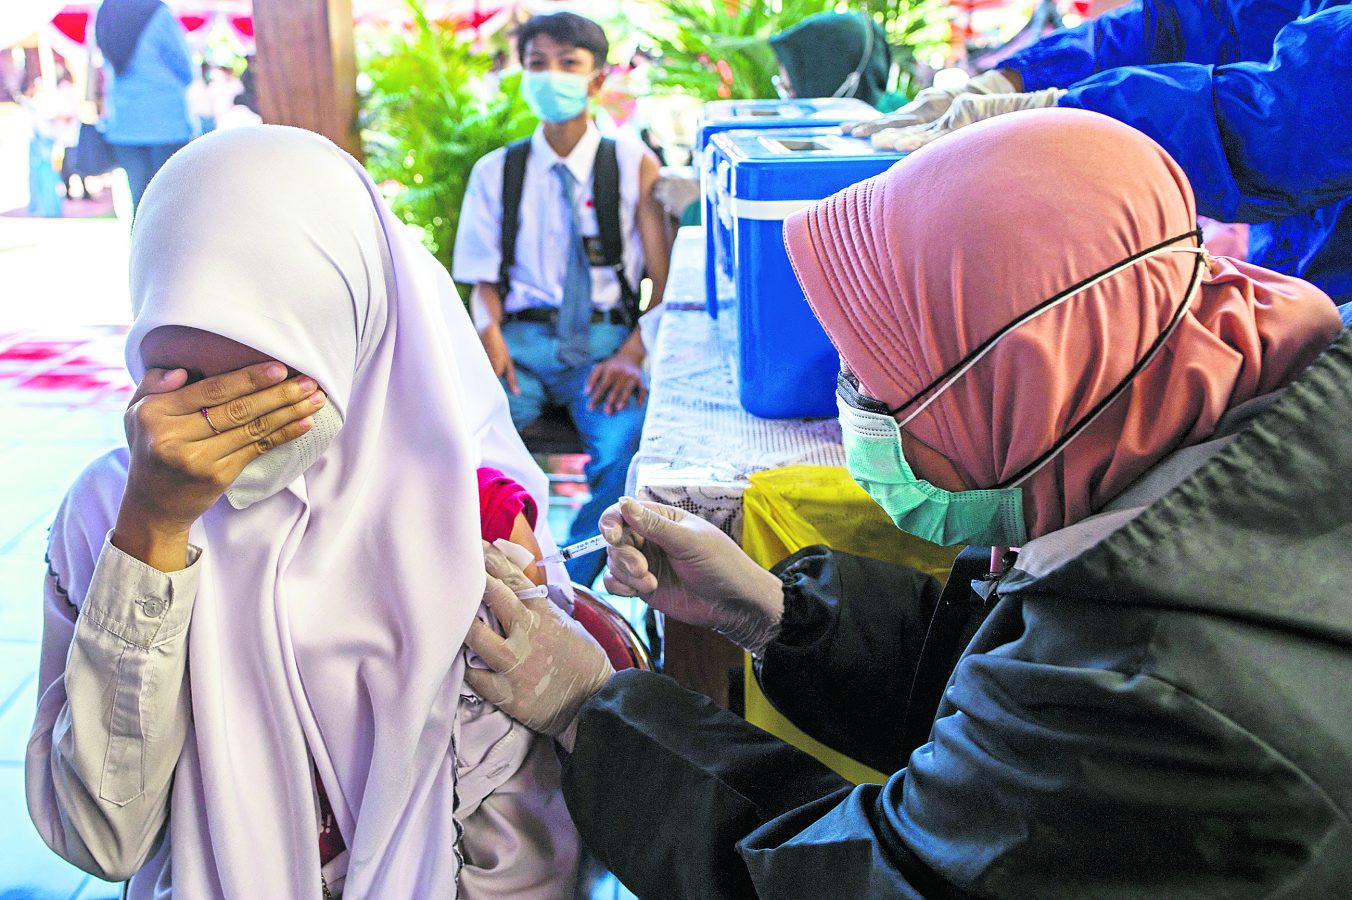 Endonezya’da lise öğrencilerine ilk gün Sinovac aşısı yapıldı. (Fotoğraf: Getty Images)